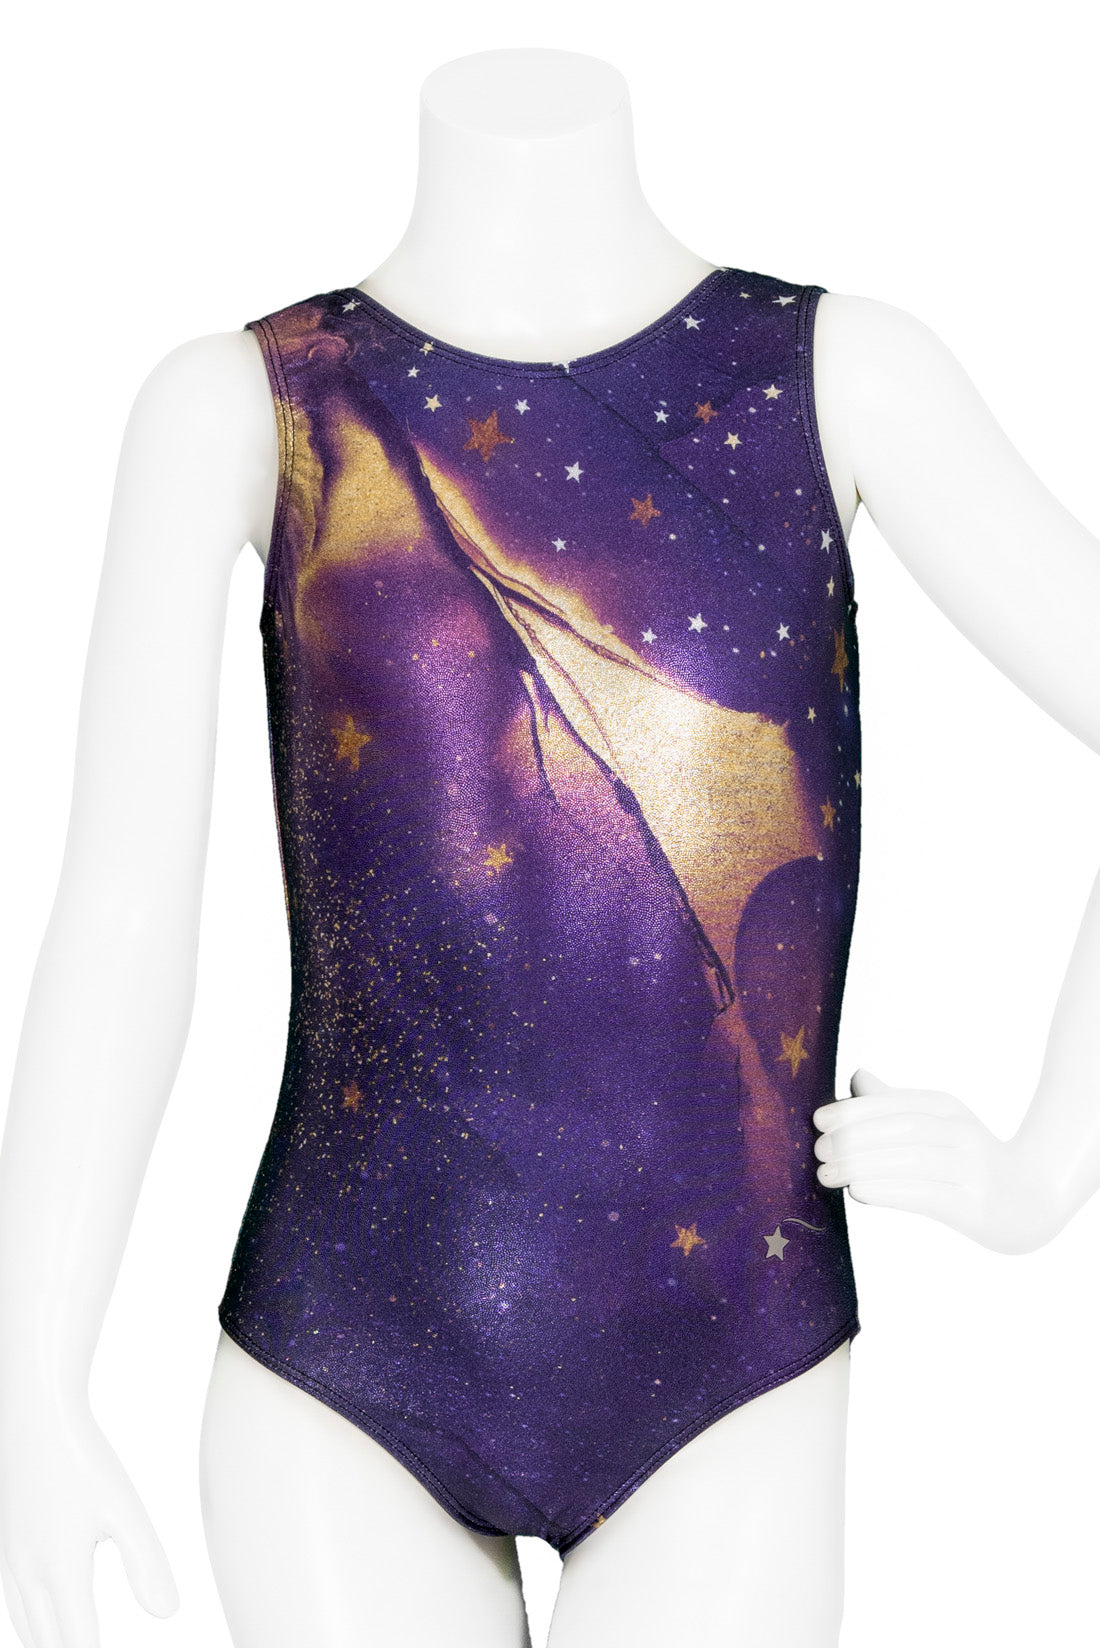 Dark purple and gold galaxy printed girls' gymnastics leotard front by Destira, 2023